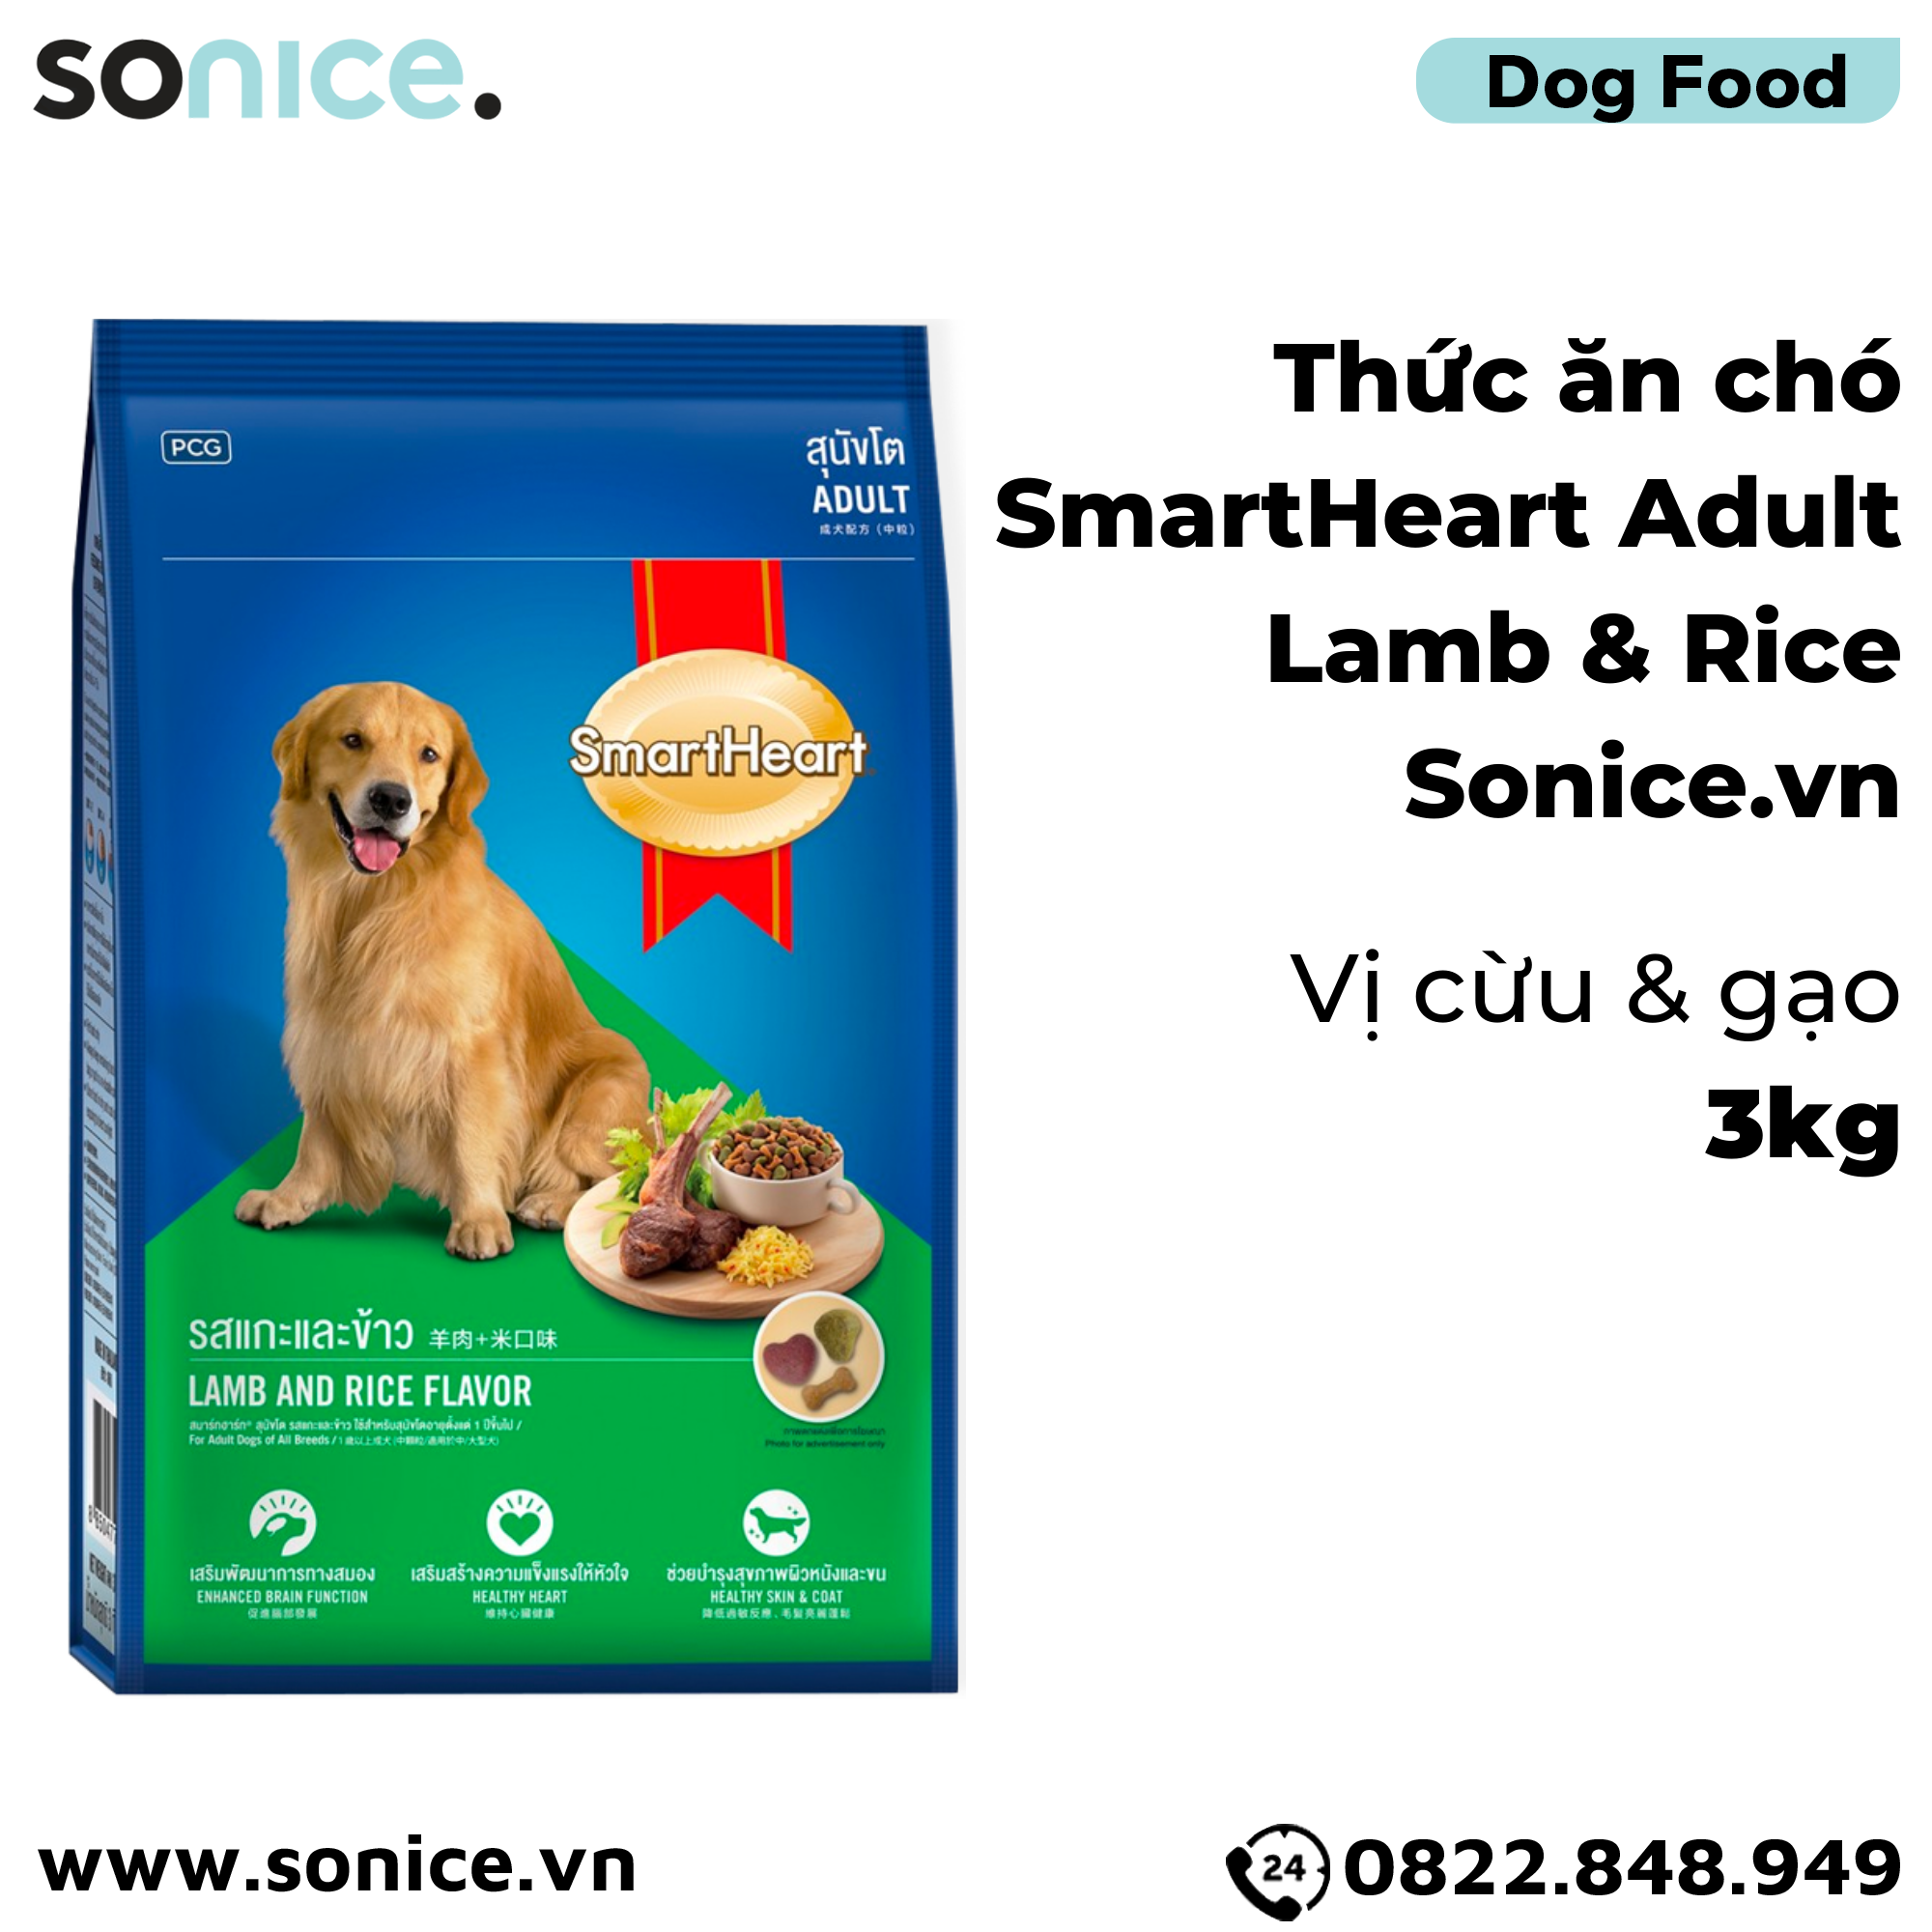  Thức ăn chó SmartHeart Adult Lamb & Rice 3kg - vị cừu & gạo SONICE. 